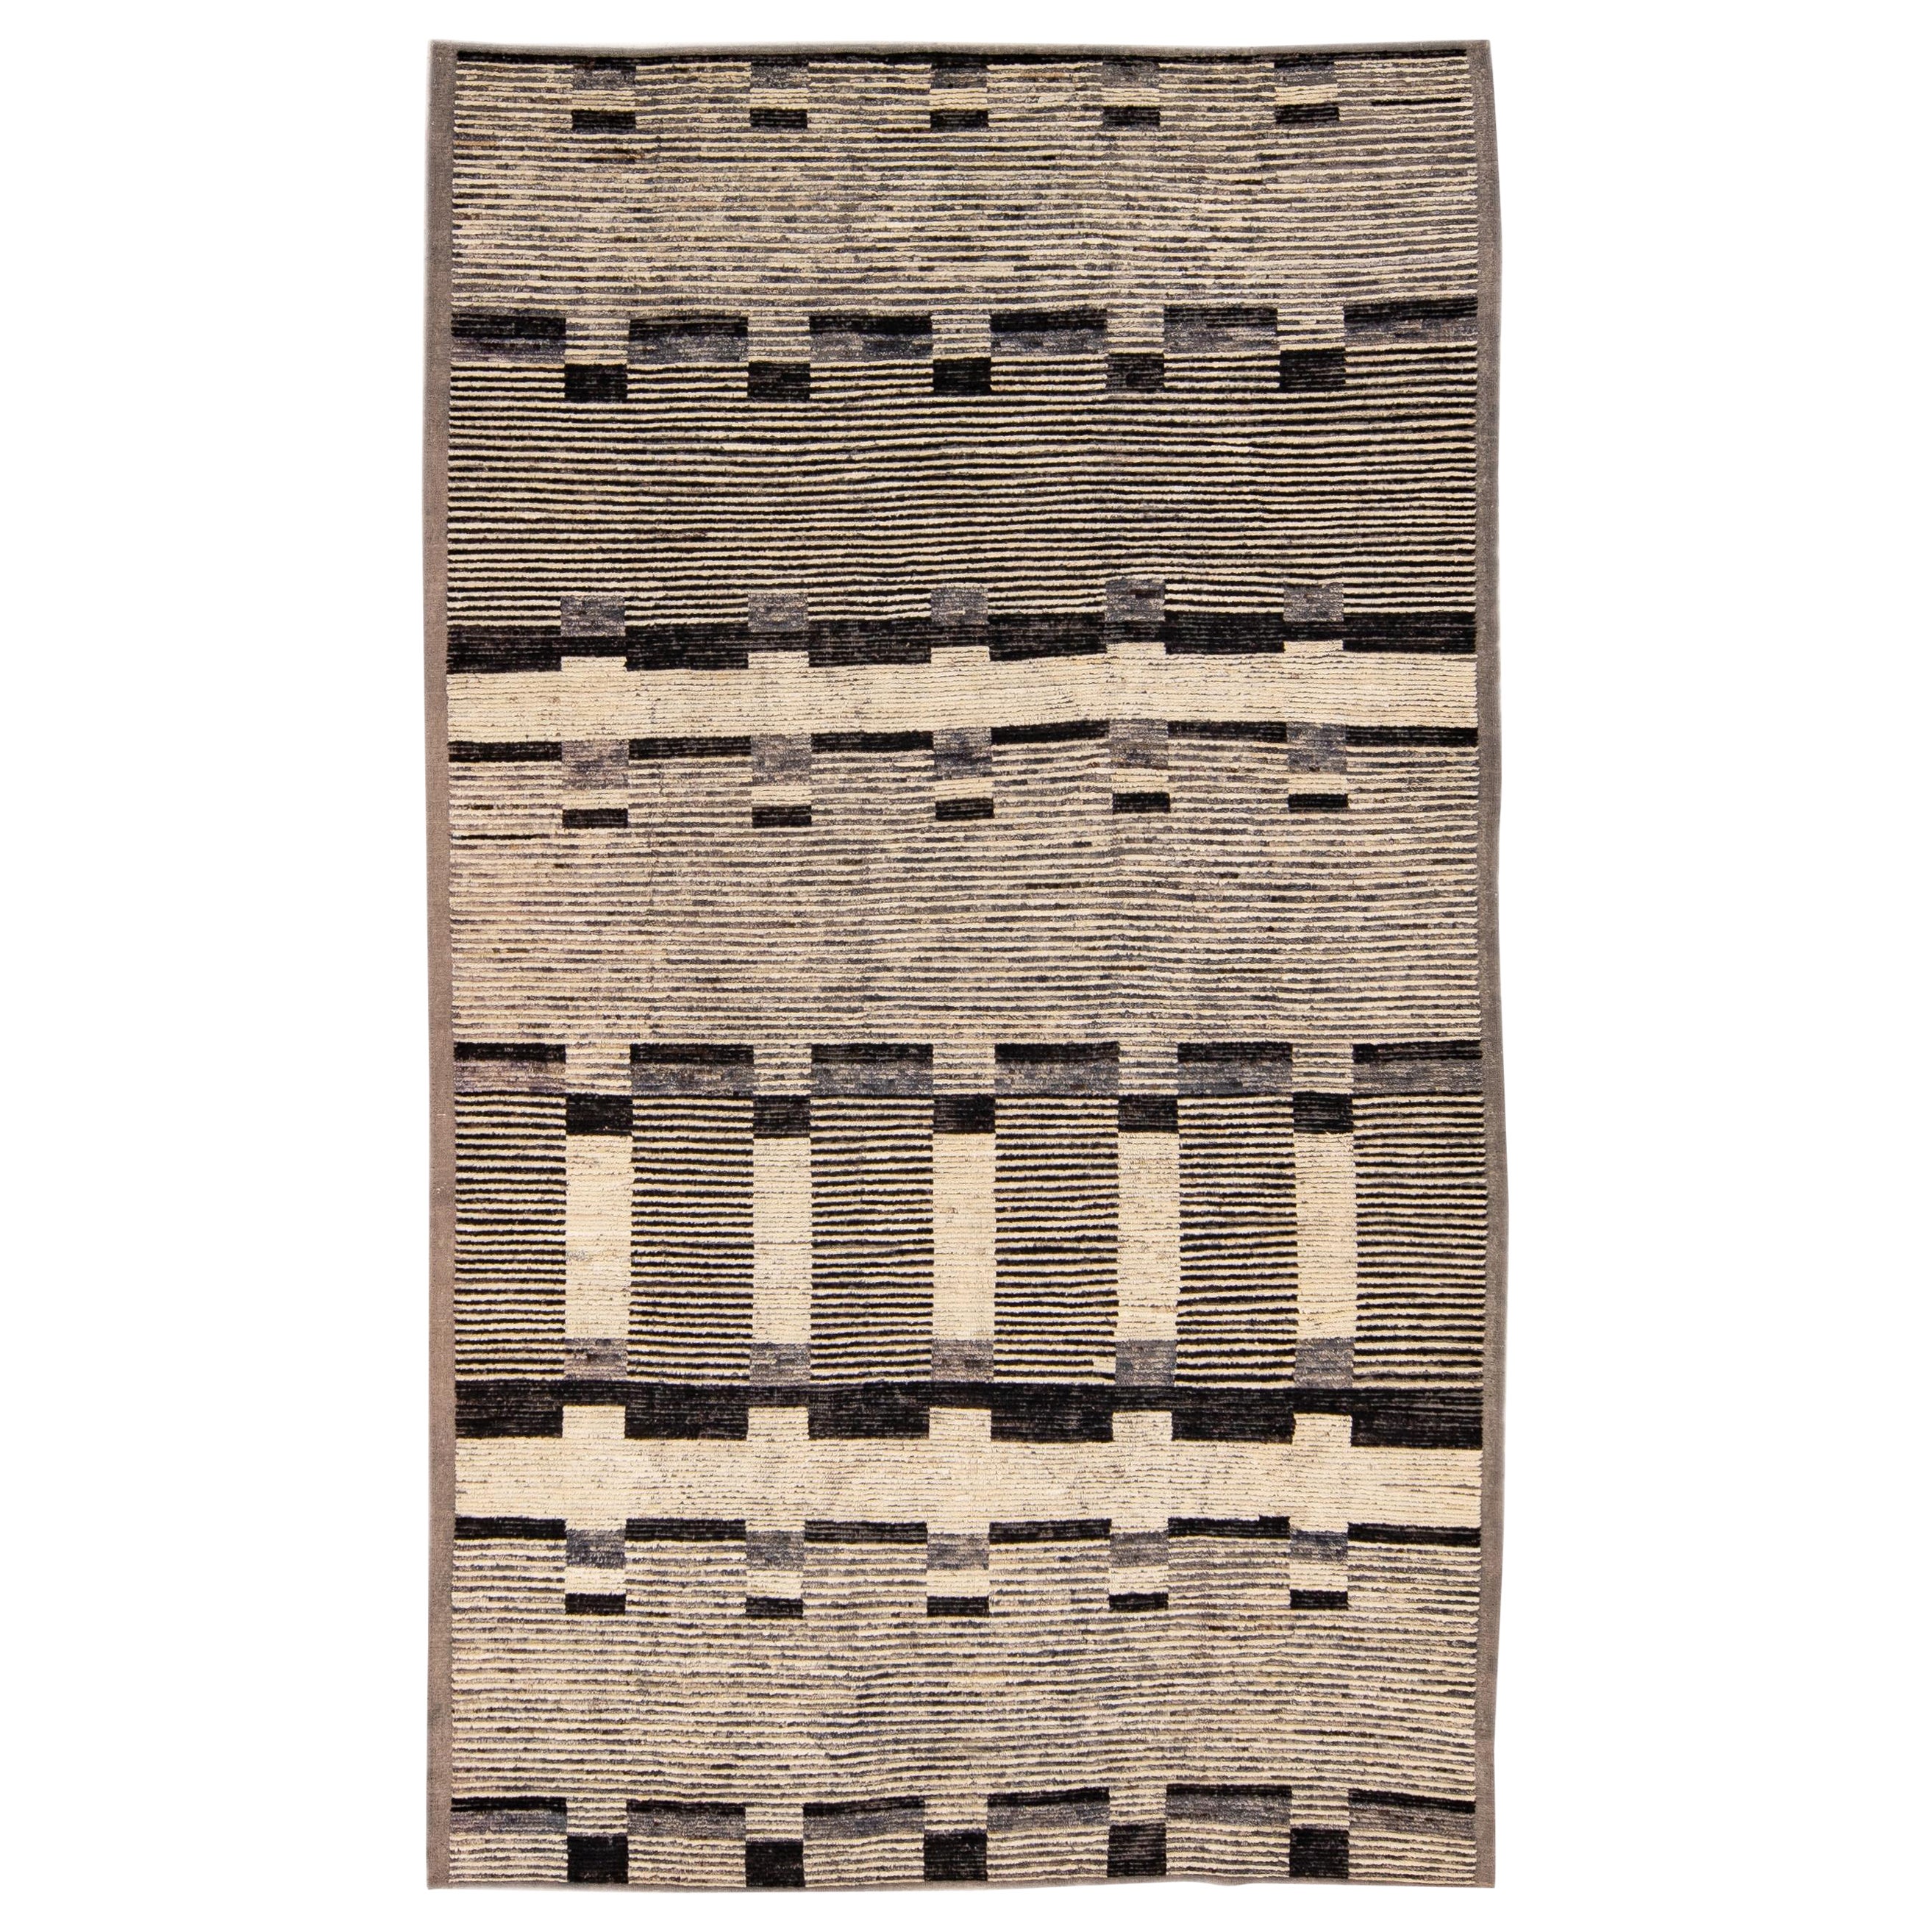 Tapis moderne en laine beige de style marocain, fait à la main, à motif géométrique marron